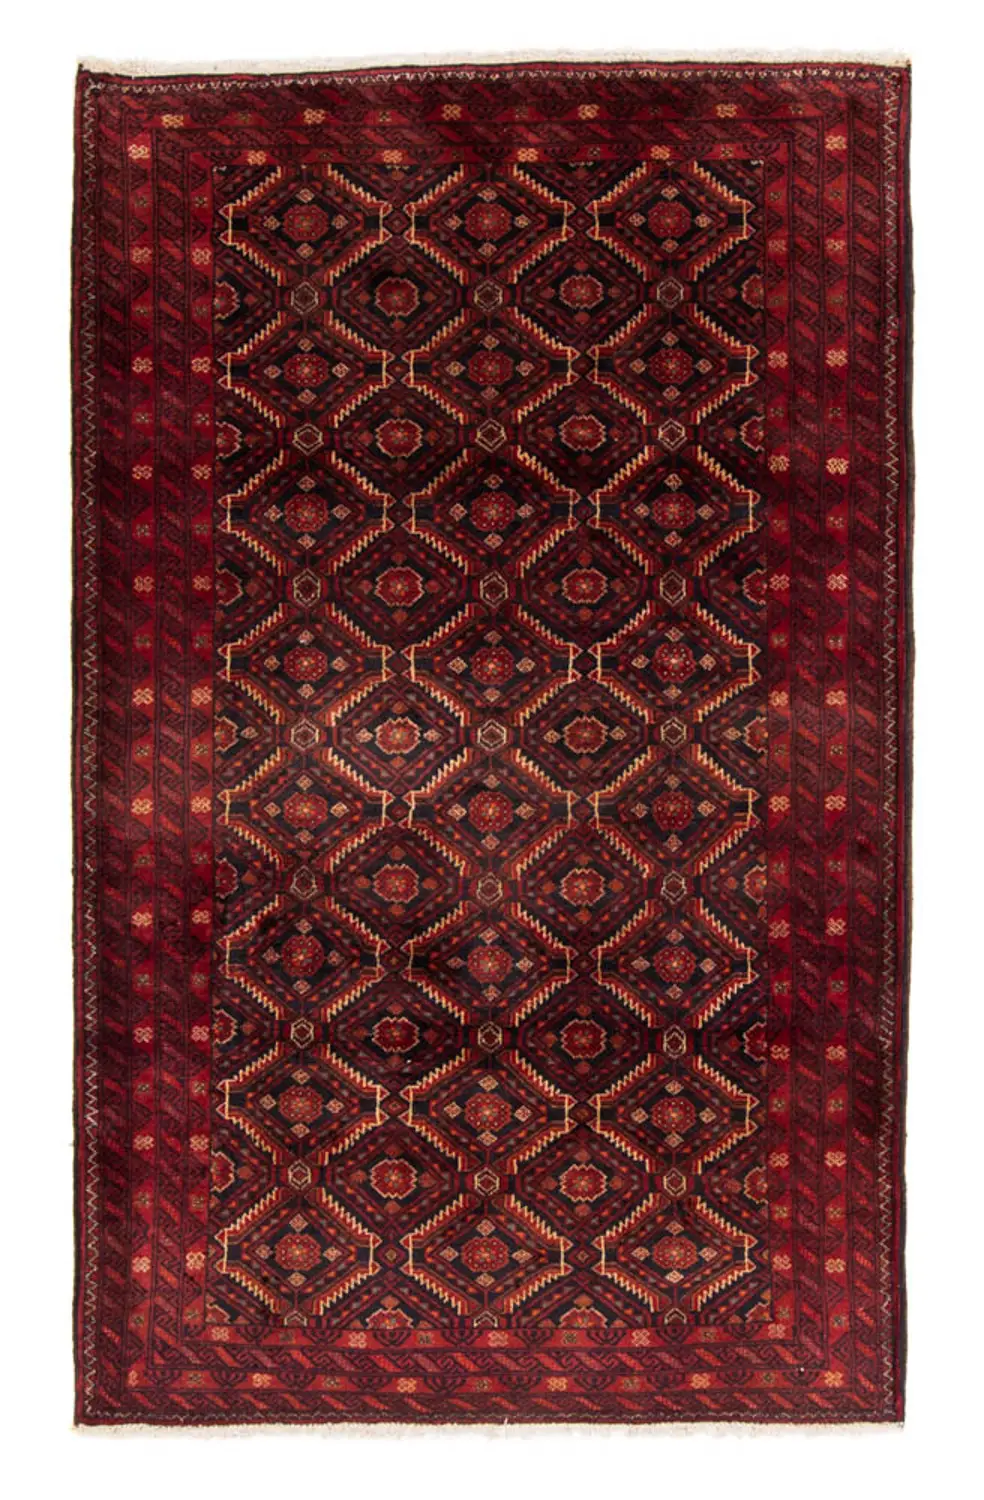 spottbillig verschleudern Belutsch Teppich - 193 x 111 - rot cm